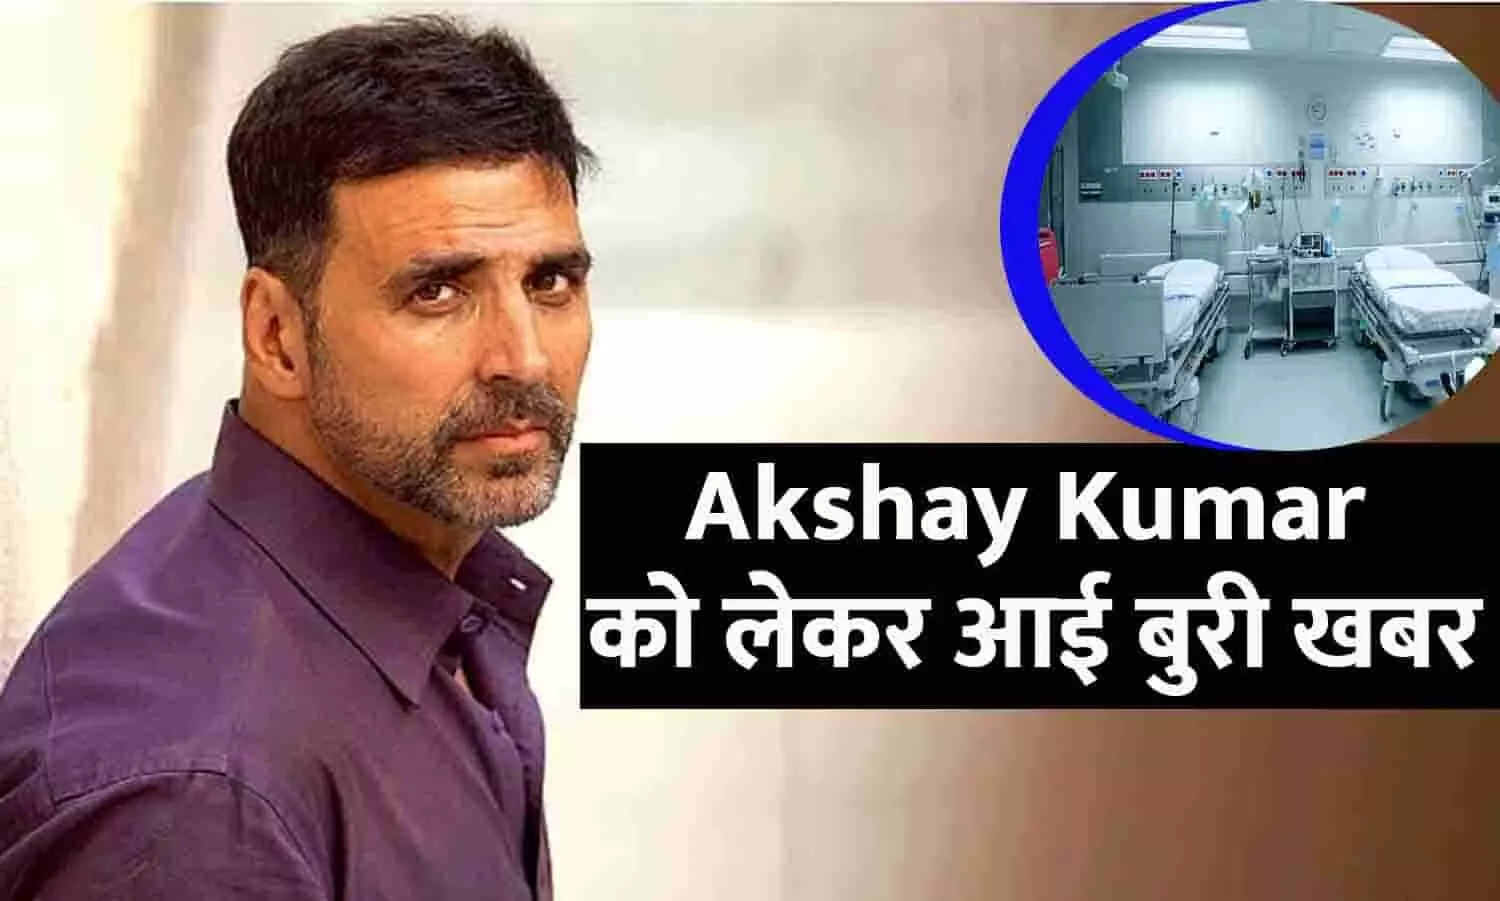 Akshay Kumar को लेकर आई बुरी खबर, स्टंट सीन करते वक्त लगी चोट, एक्टर को ले जाया गया अस्पताल, परिवार और फैंस मांग रहे दुआ